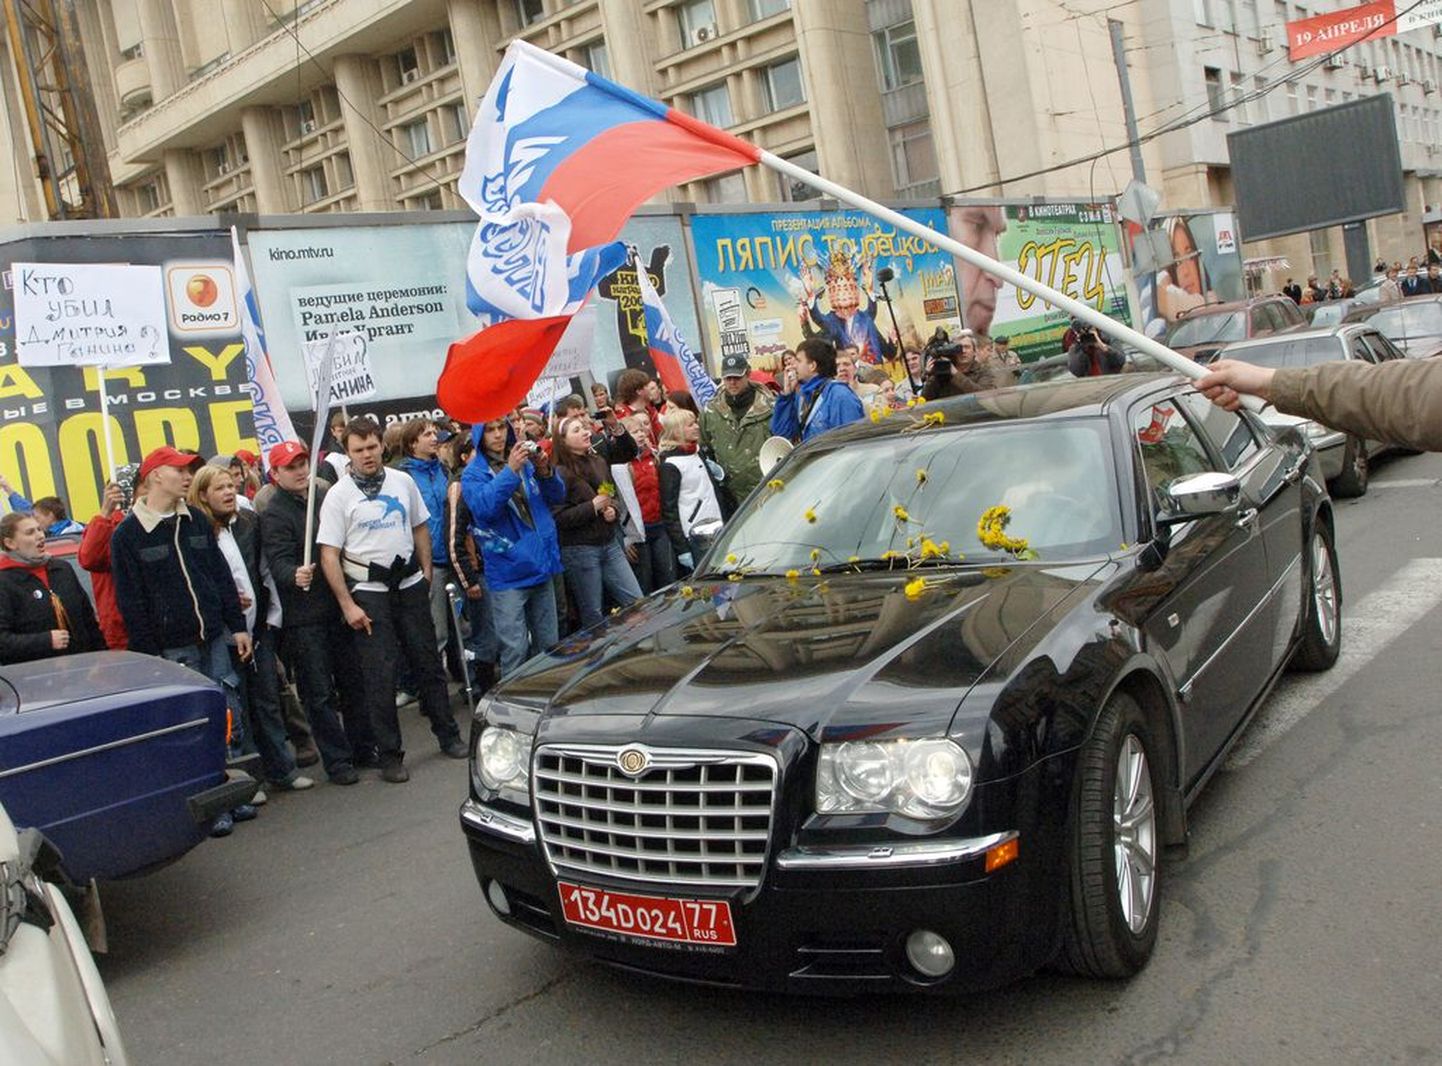 Tollane diplomaat Marina Kaljurand lahkumas Moskvas pressikonverentsilt, nooraktivistid külvasid tema auto üle võililledega 2007. aastal.